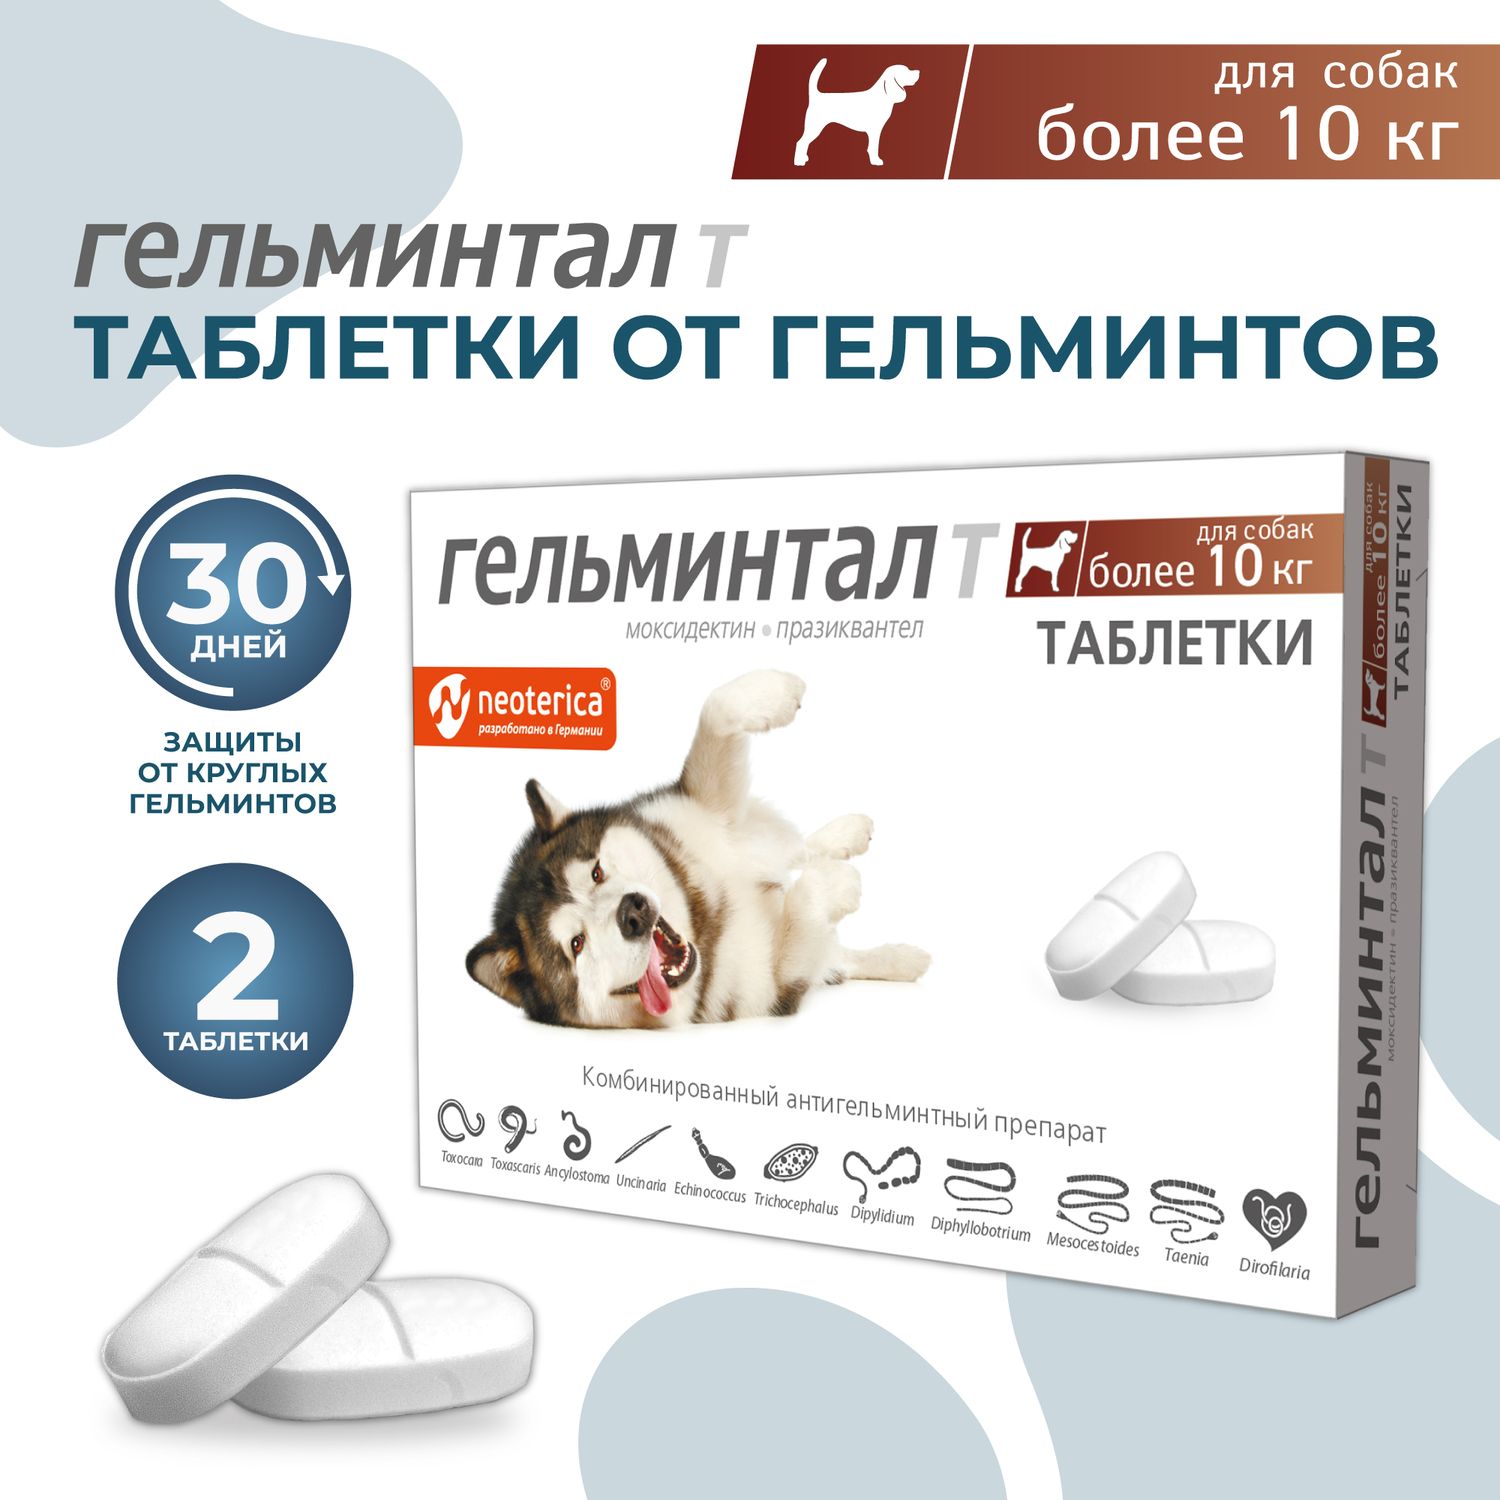 Гельминтал мини. Гельминтал для собак. Гельминтал для собак более 10 кг инструкция. Гельминтал таблетки для собак более 10кг инструкция.